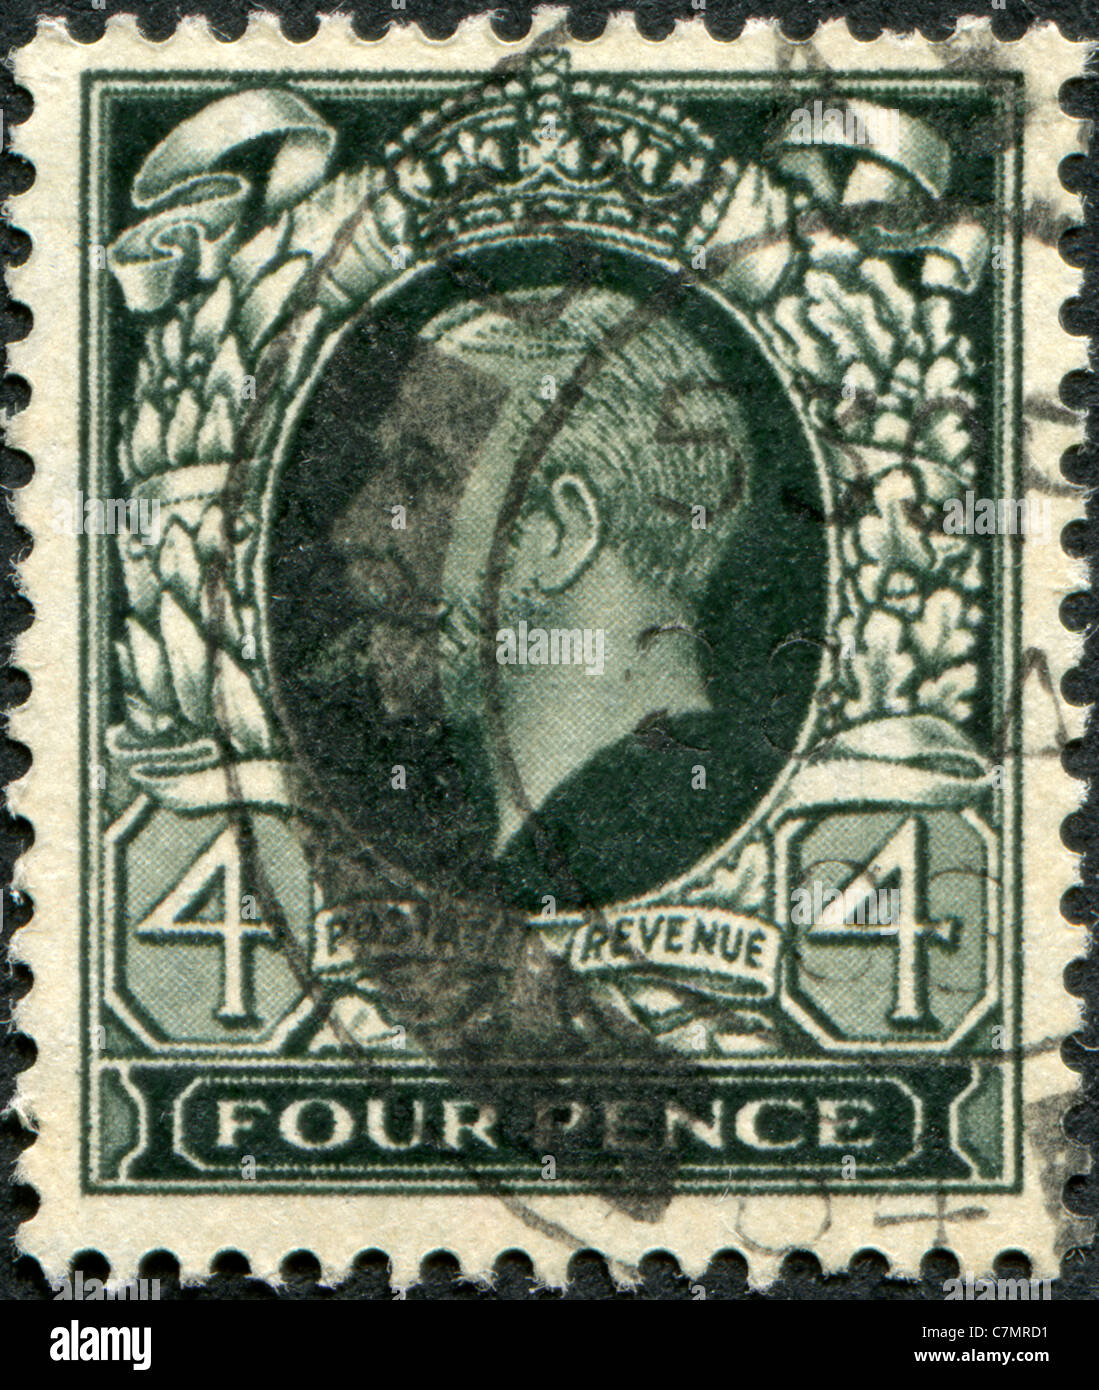 Royaume-uni - 1935 : timbre imprimé en Angleterre, indique George V du Royaume-Uni Banque D'Images